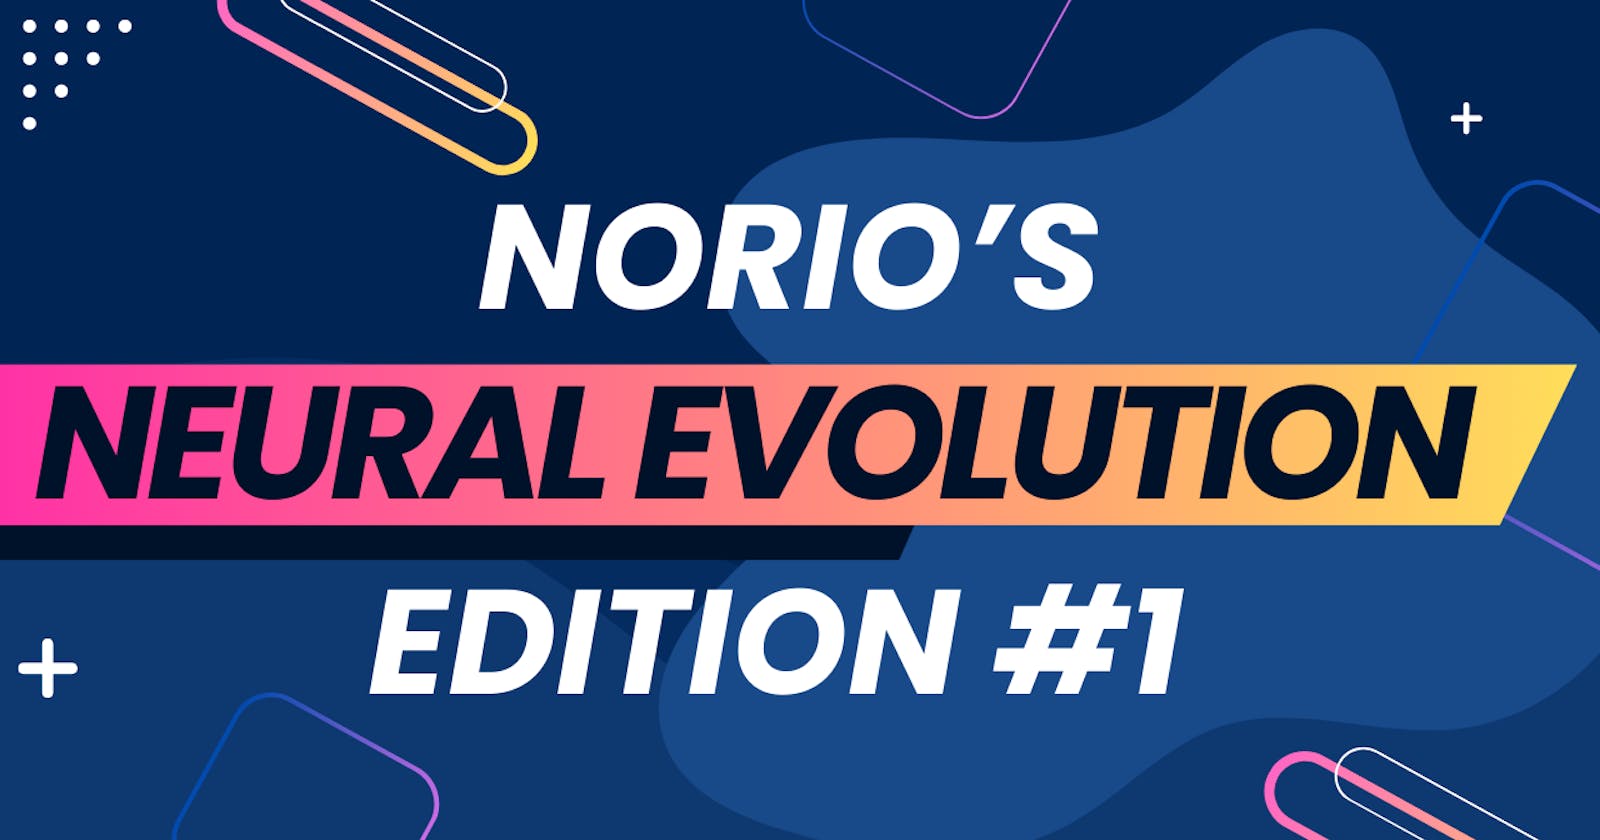 Norio's Neural Evolution #1